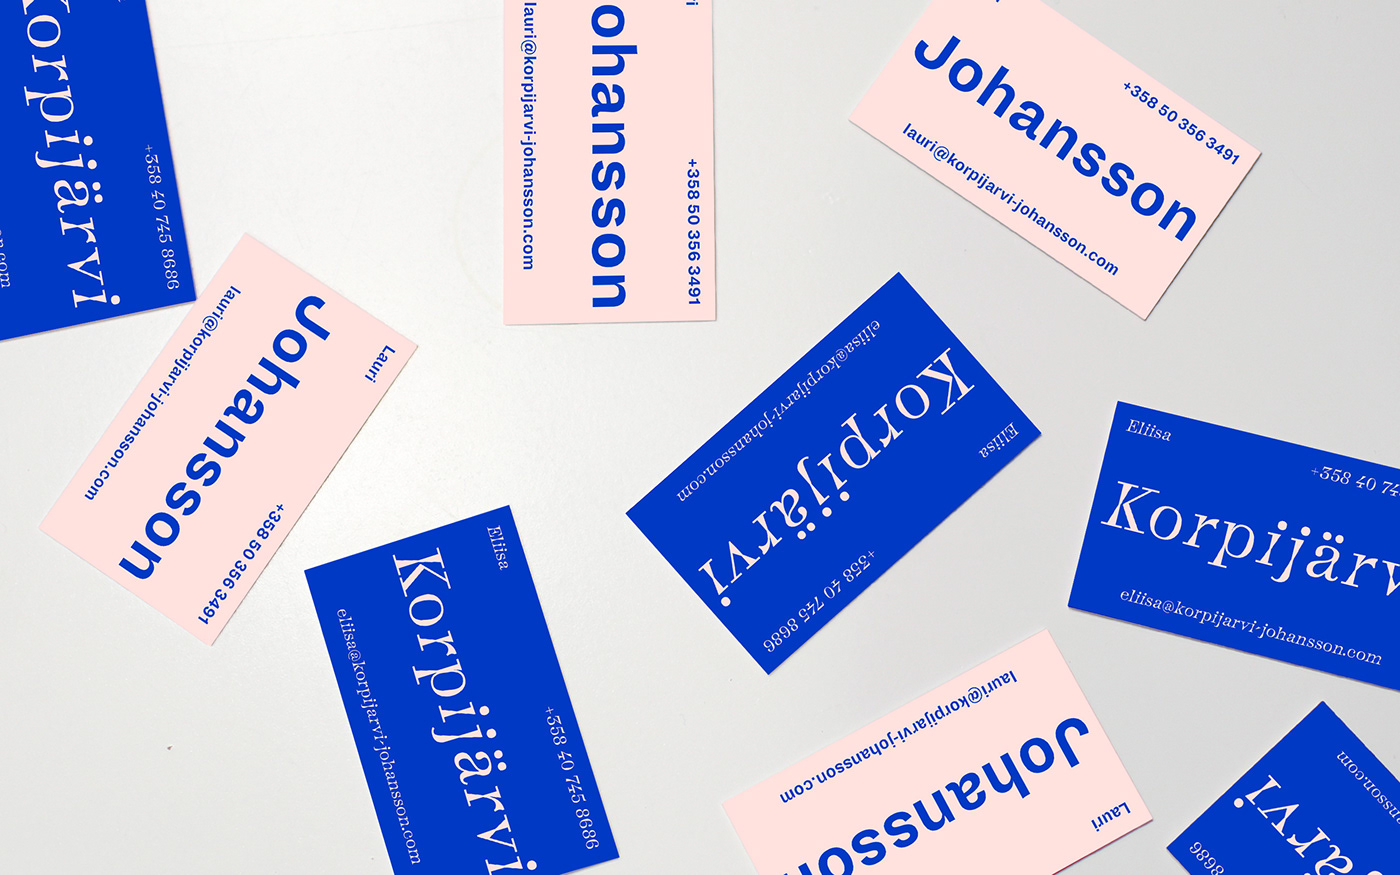 Business card design idea #428: Korpijärvi & Johansson